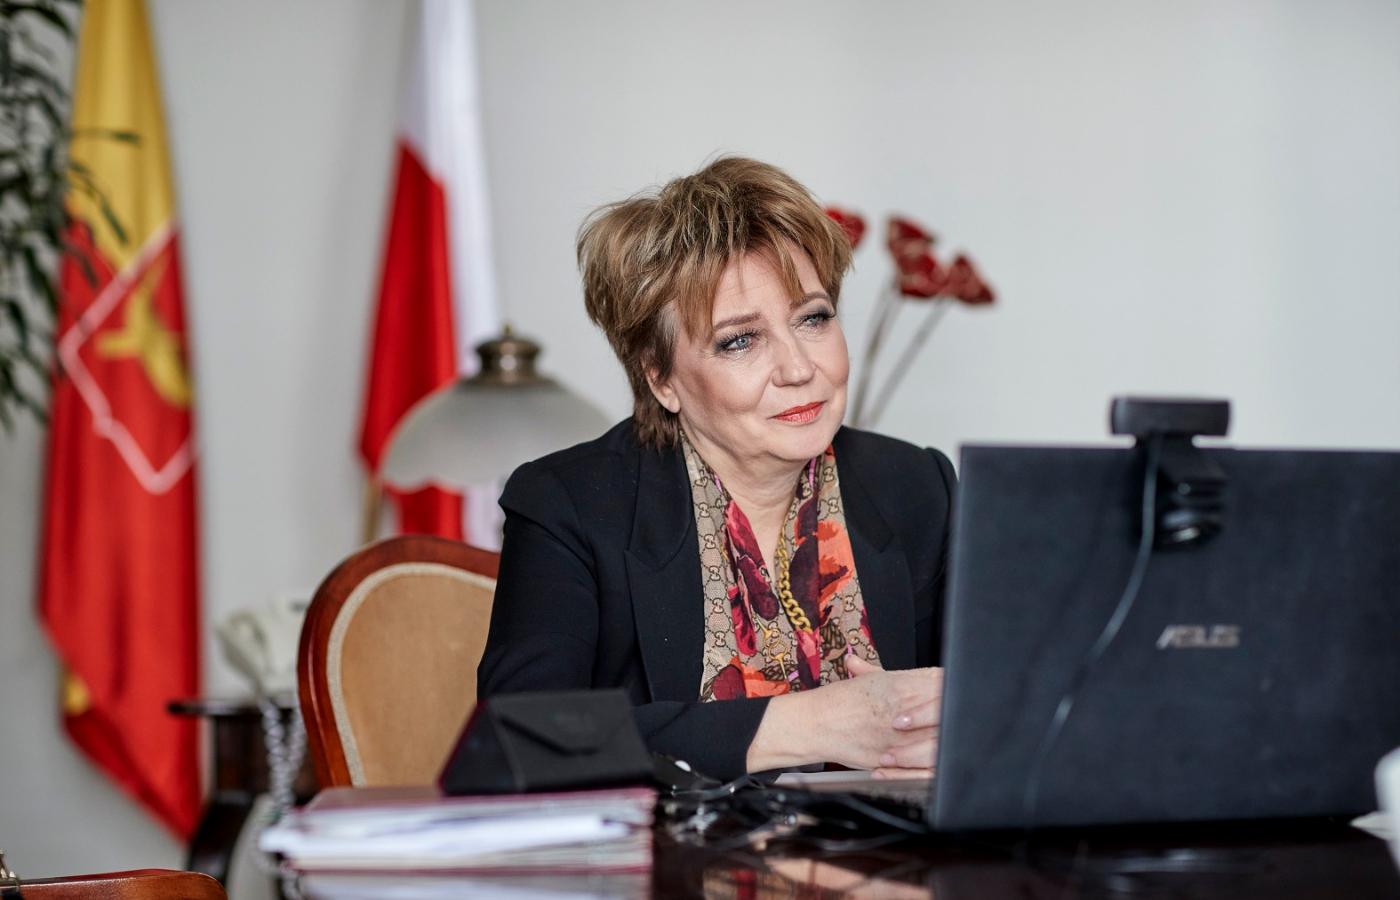 Prezydent Łodzi Hanna Zdanowska podczas zdalnej rozmowy. Kwiecień 2020 r.